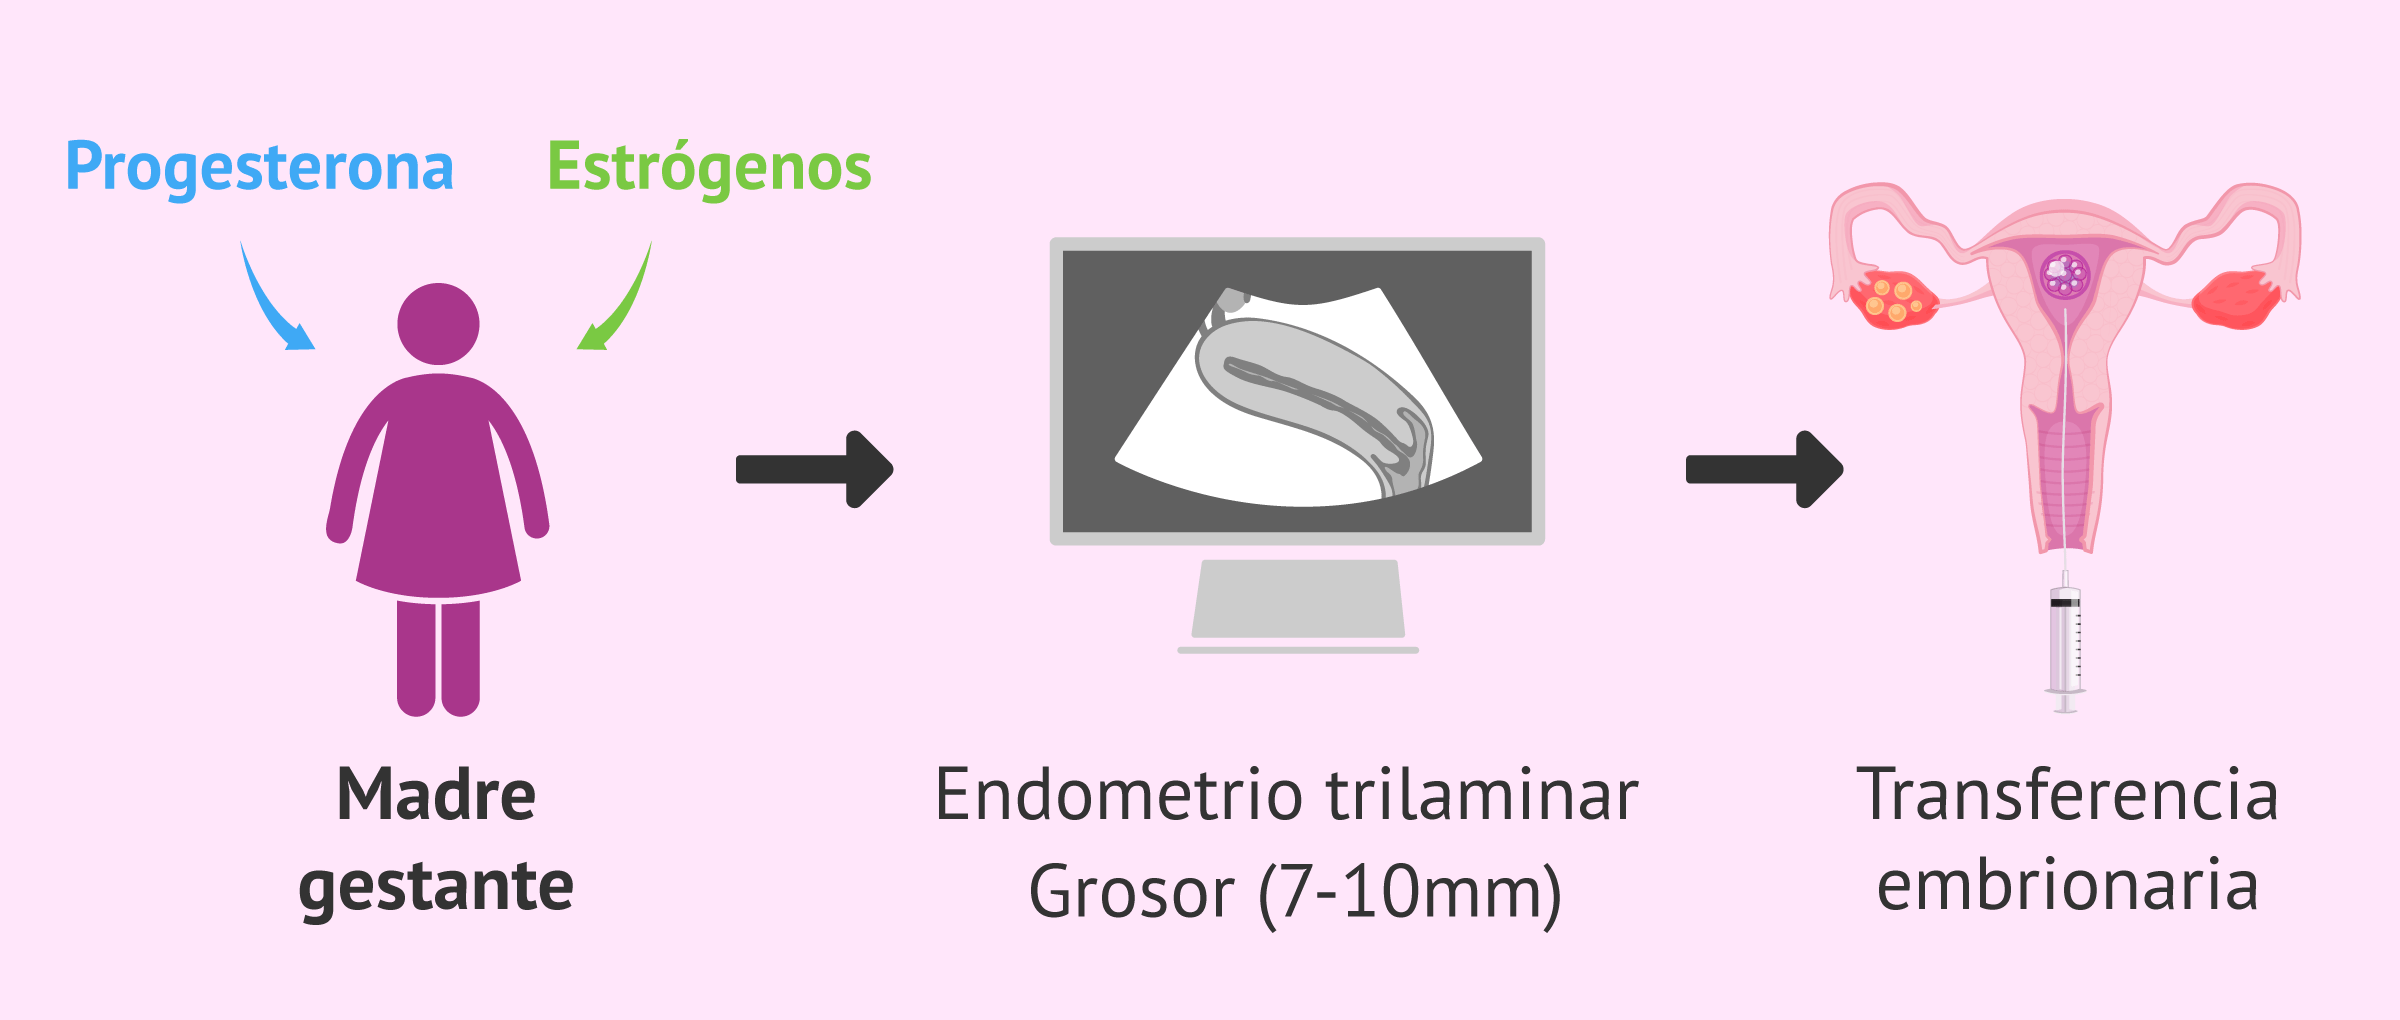 Preparación endometrial y transferencia embrionaria